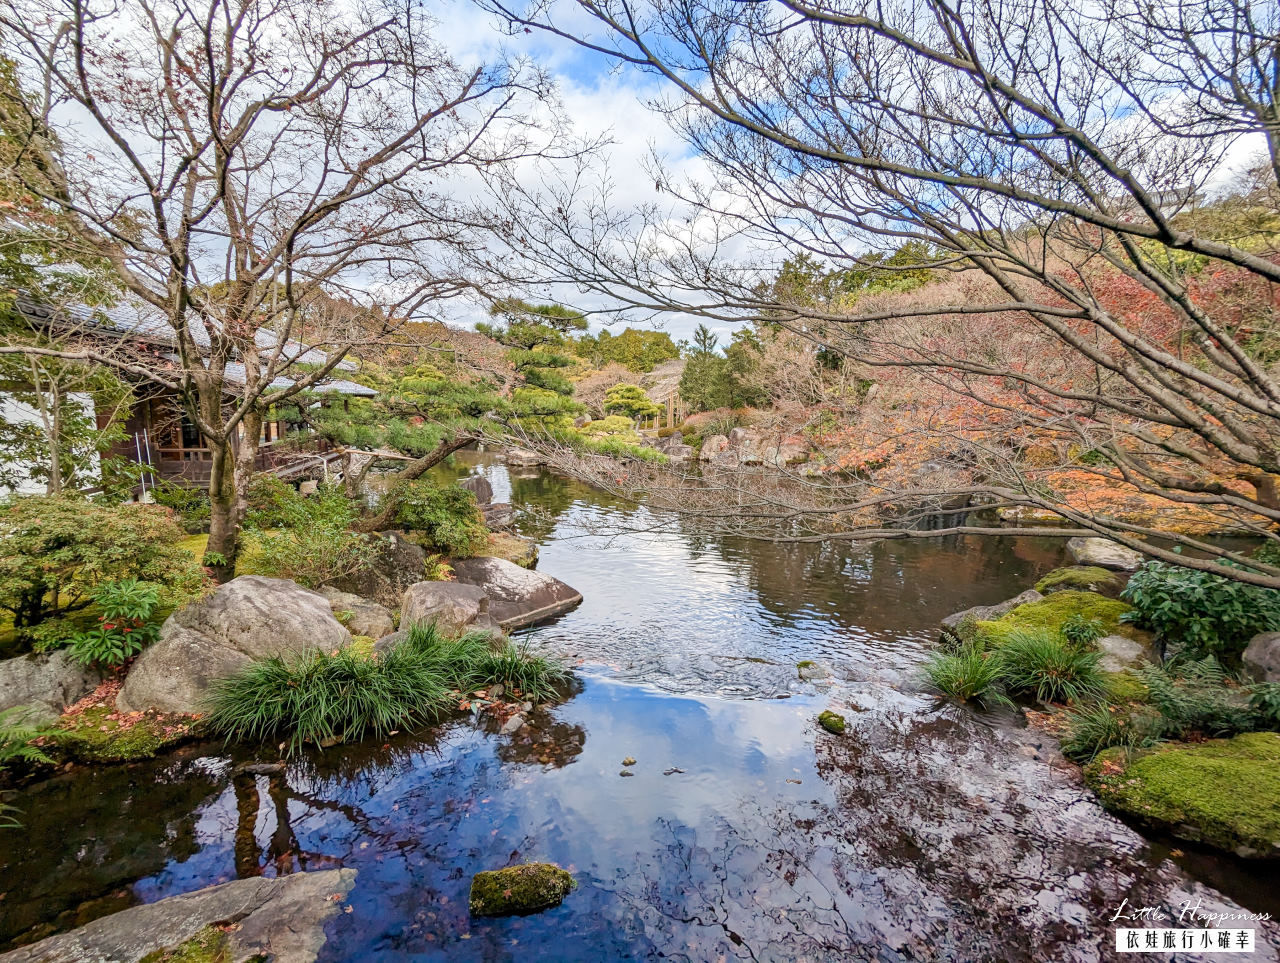 神戶一日遊自由行怎麼玩？交通、美食、景點懶人包，探訪私房景點、百年溫泉、瀑布步道深度旅遊